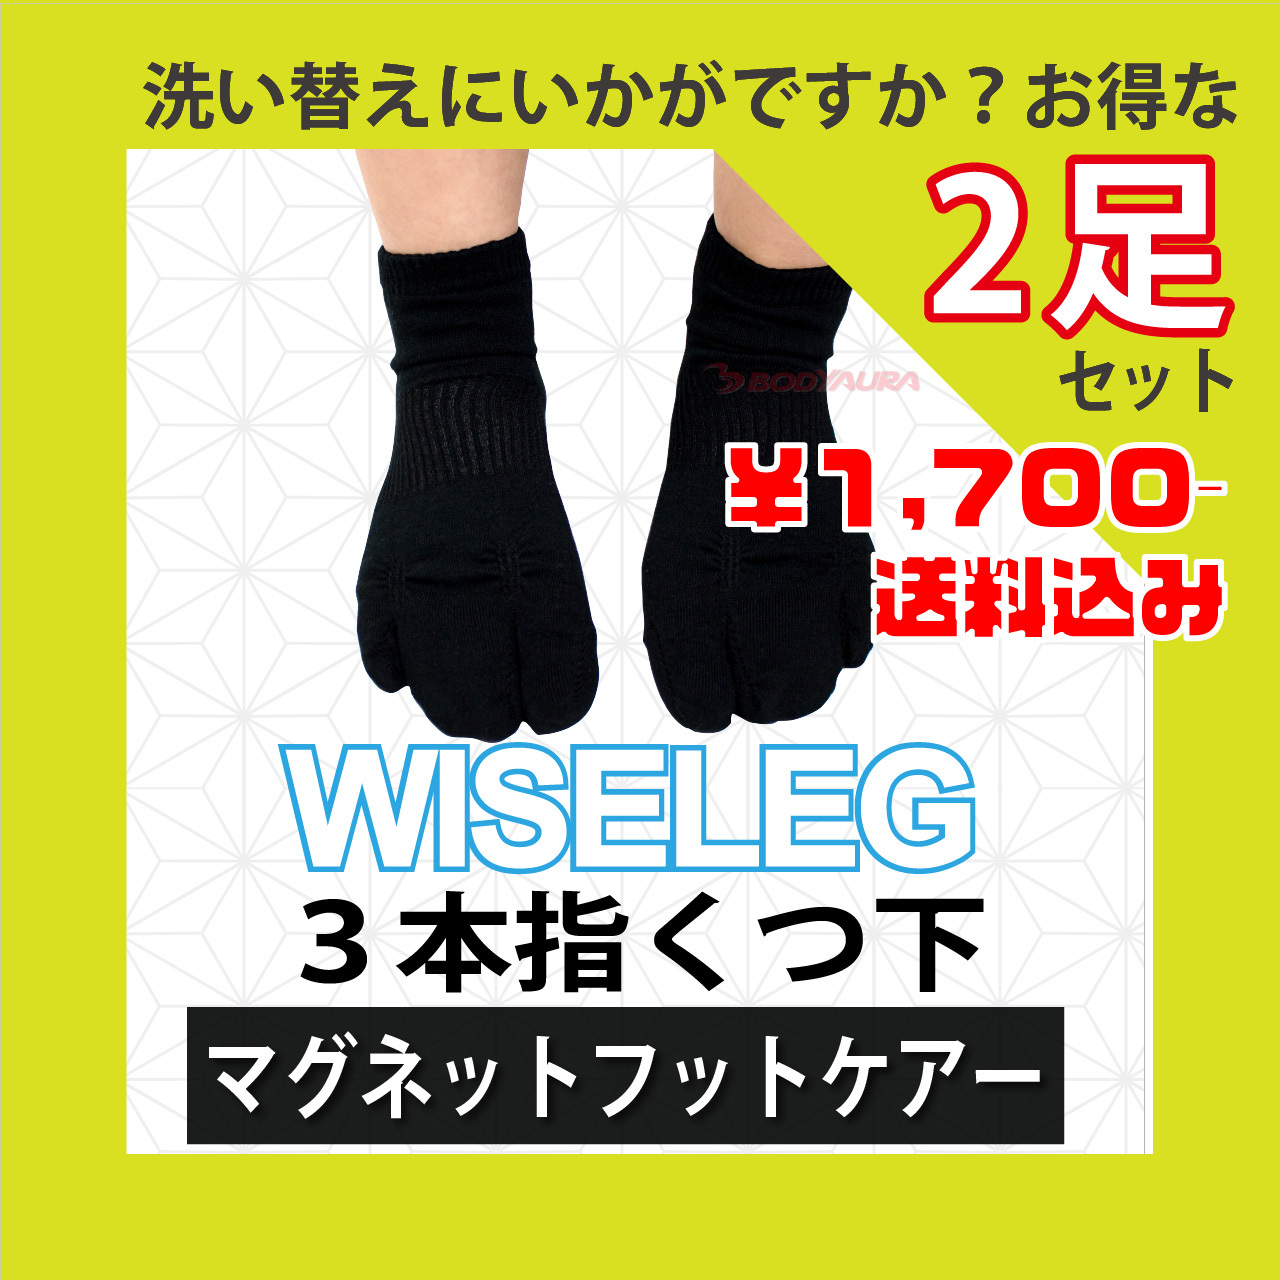 マグネットフットケアWISELEG3本指靴下2足セット¥1700送料無料